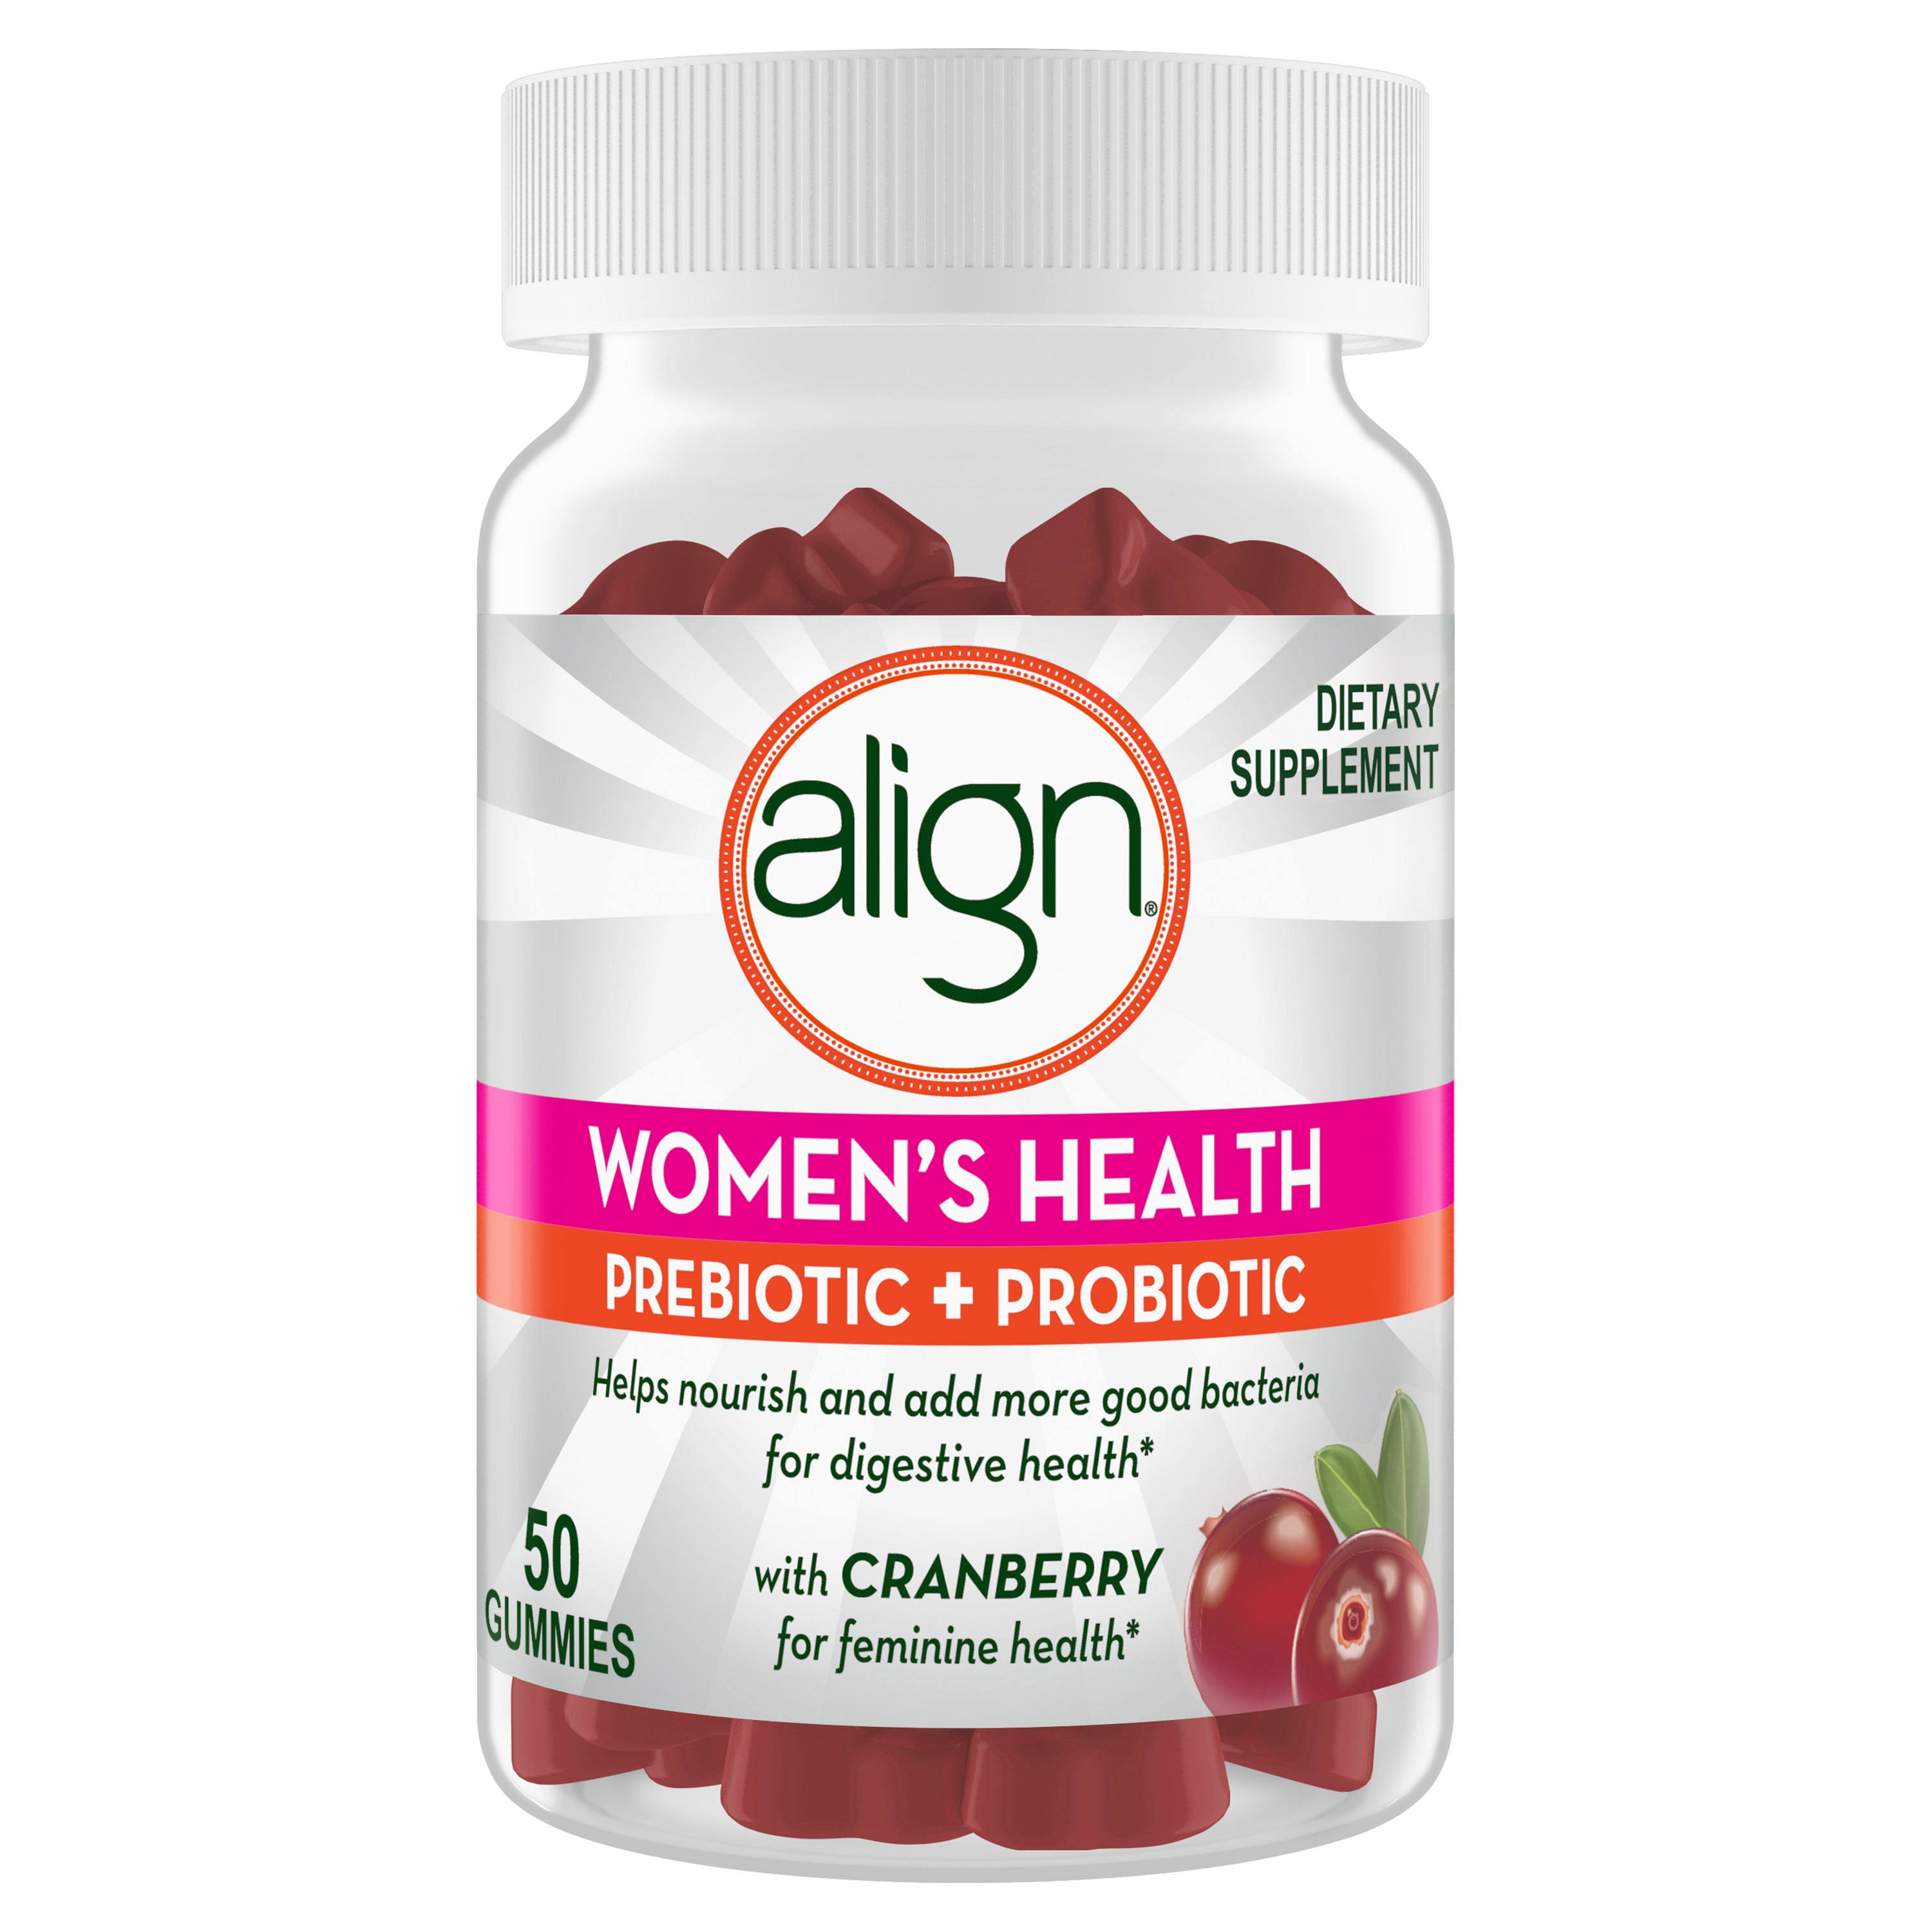 Align Women’s Health Prebiotic Probiotic Supplements - Cranberry, 50ct